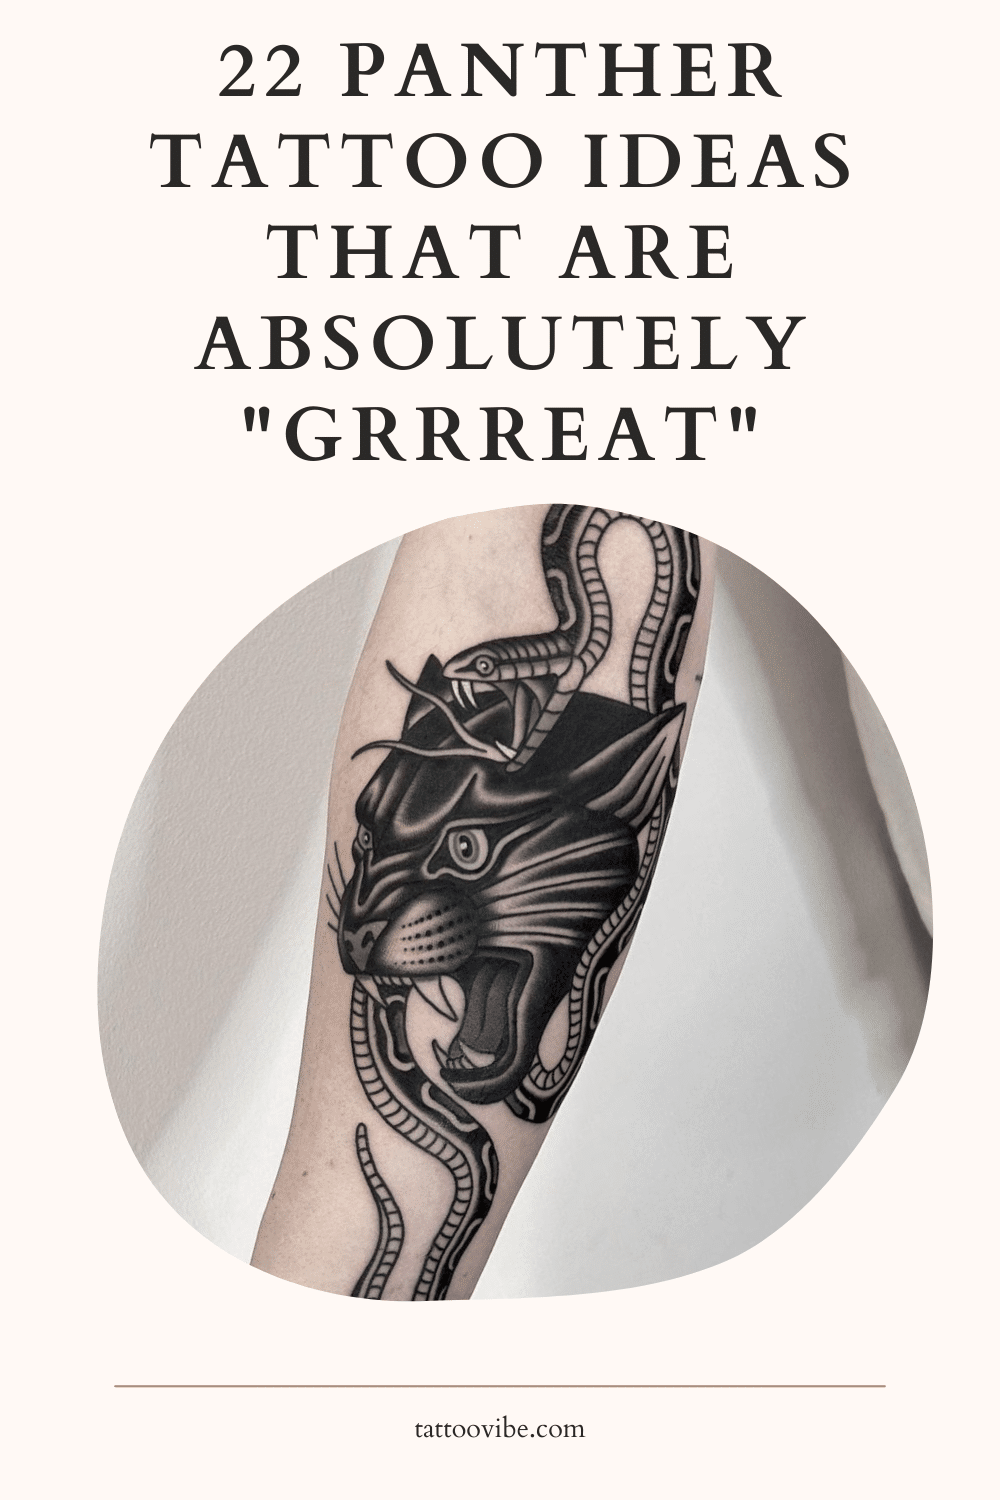 22 Ideias de tatuagens de panteras que são absolutamente "Grrreat" (fantásticas)